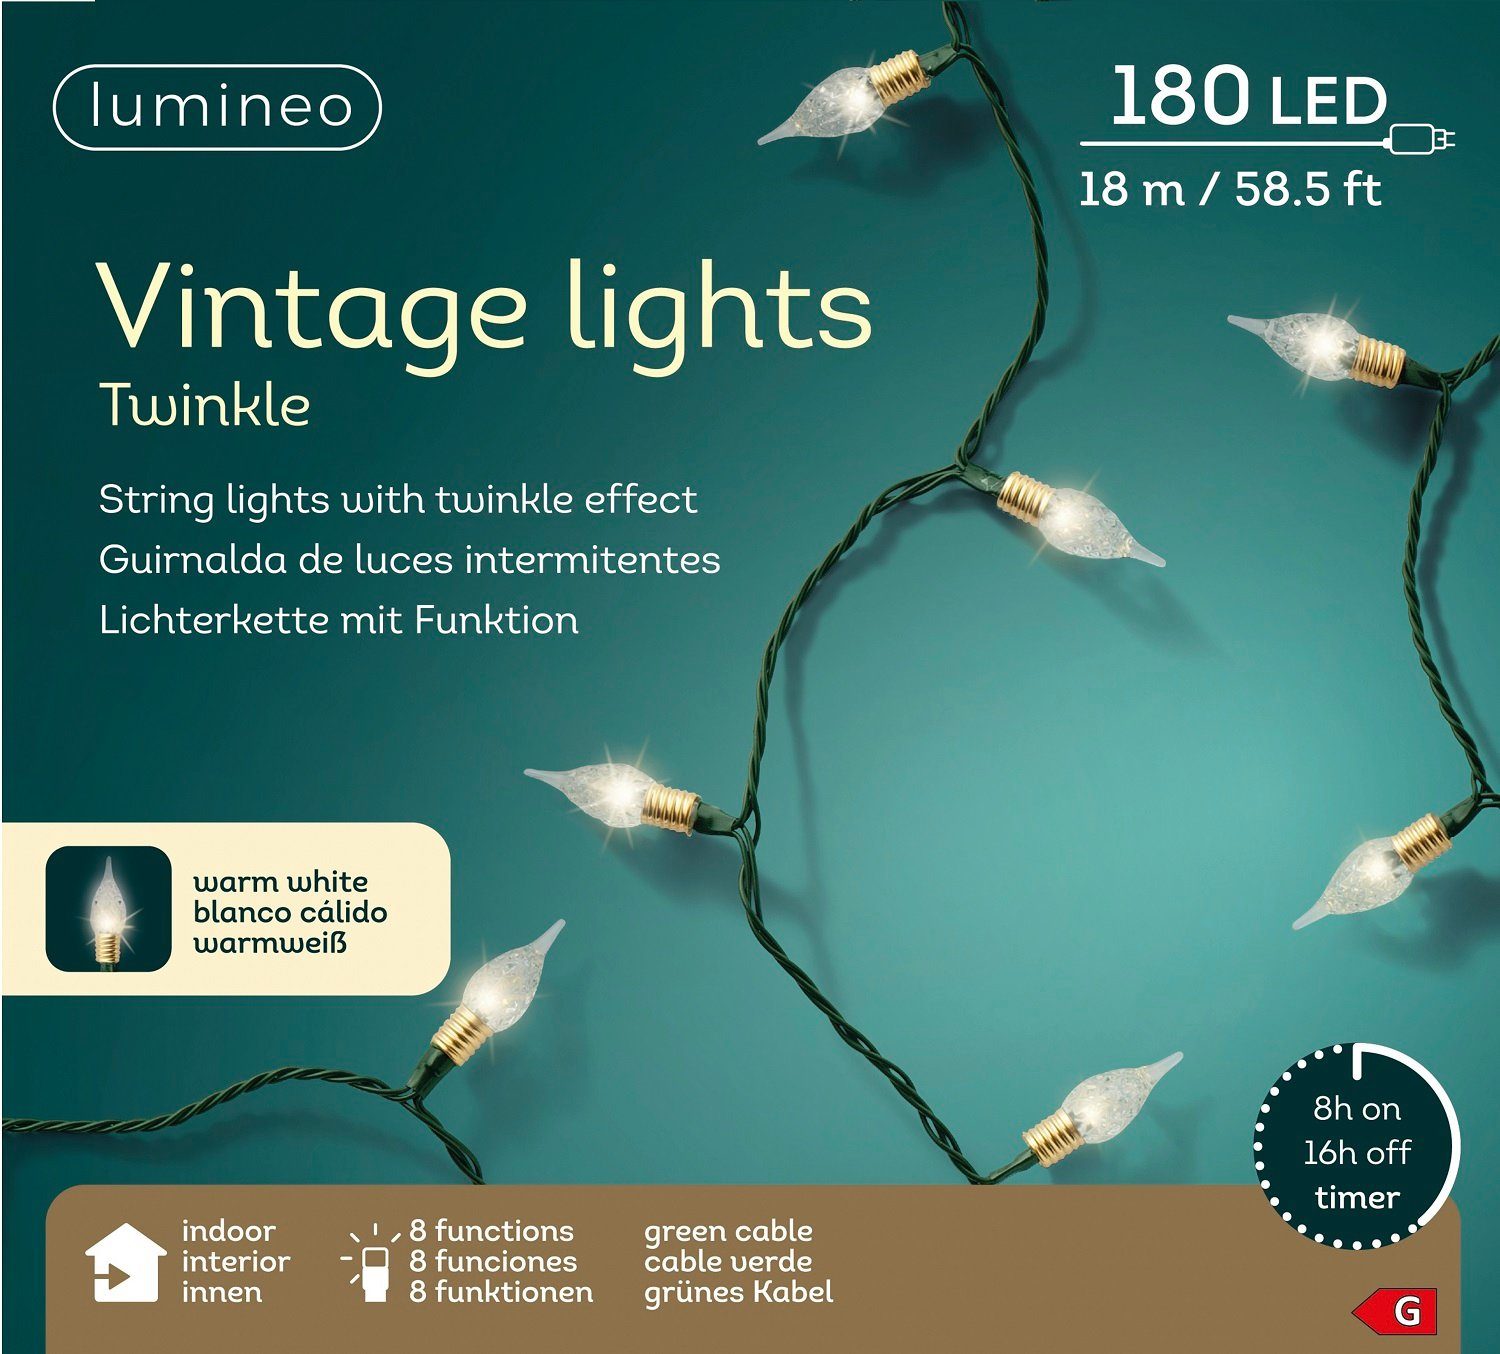 Lumineo LED-Lichterkette Lumineo Lichterkette Twinkle 180 LED 18 m warm weiß, 8 Funktionen, Twinkle-Effect, Indoor, 8h-Timer